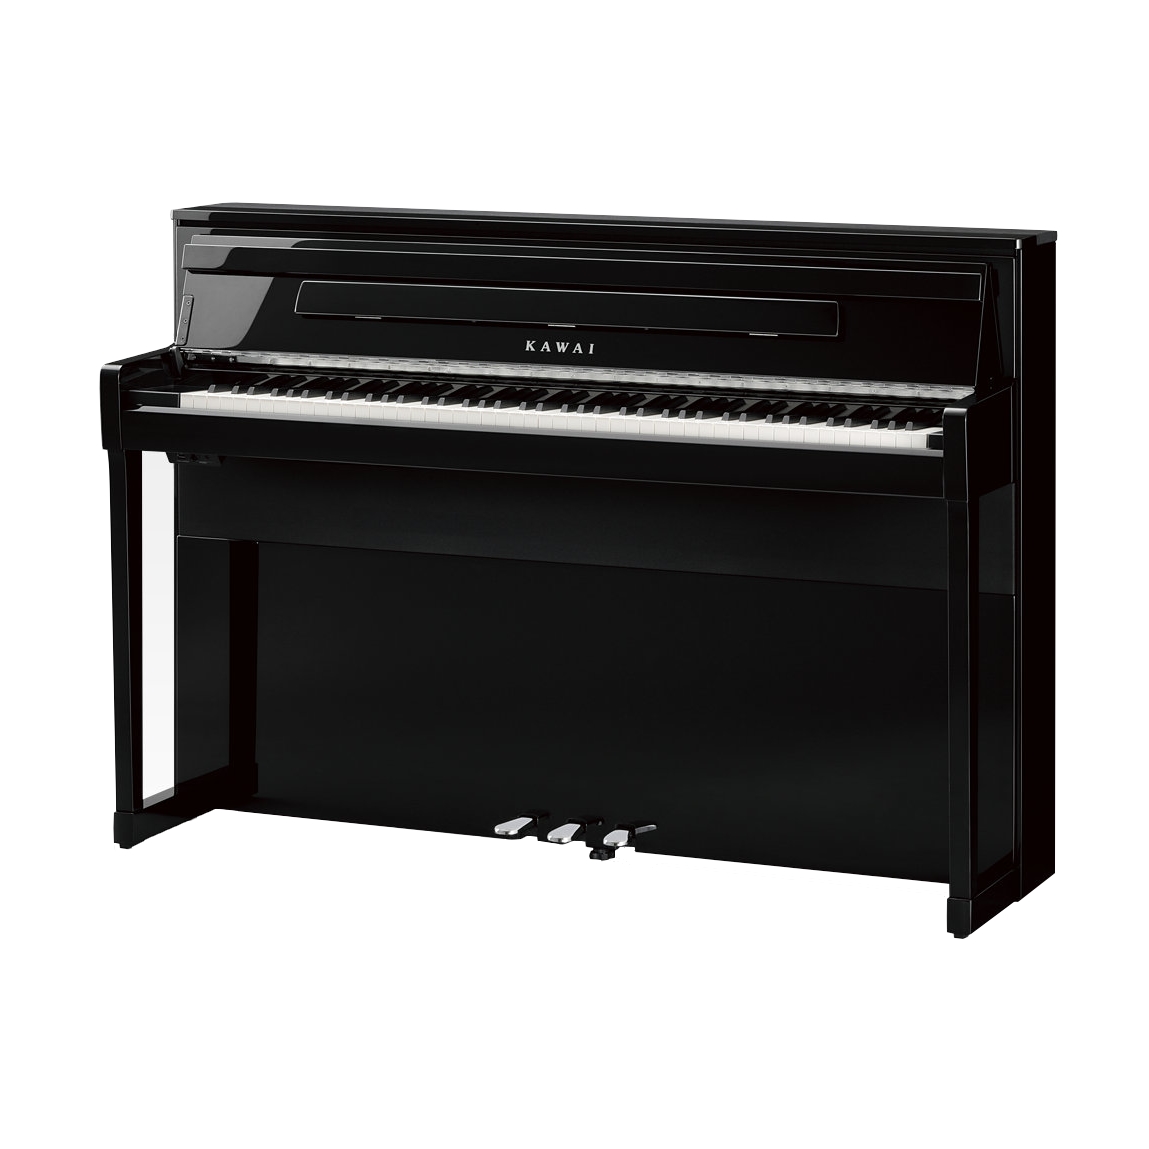 KAWAI CA99EP - цифр. пианино, механика GF III, 90 тембров, 256 полифония, 45 вт х 3, цвет черный пол